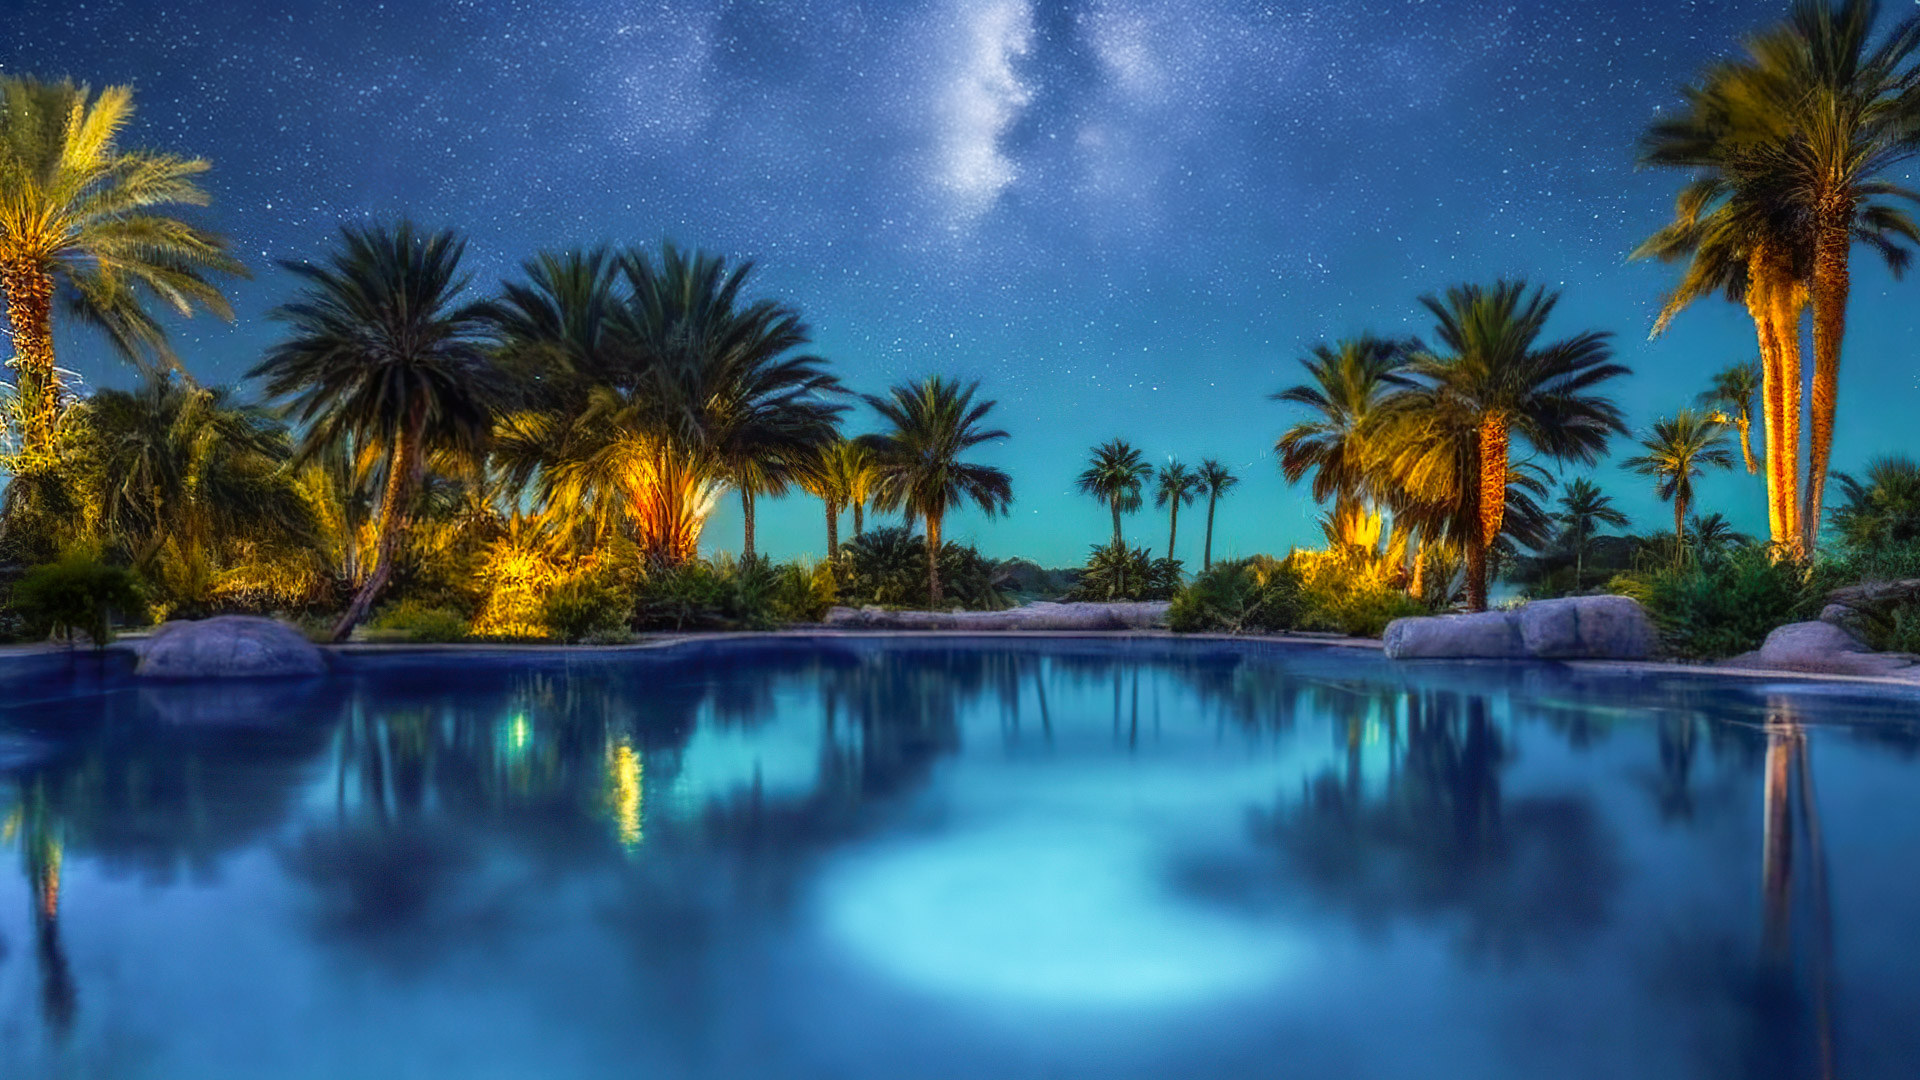 Perdez-vous dans la sérénité de notre fond d'écran de paysage haute résolution en 1920x1080 HD, capturant une oasis désertique sous la Voie lactée, où des palmiers entourent une piscine sereine et étoilée.